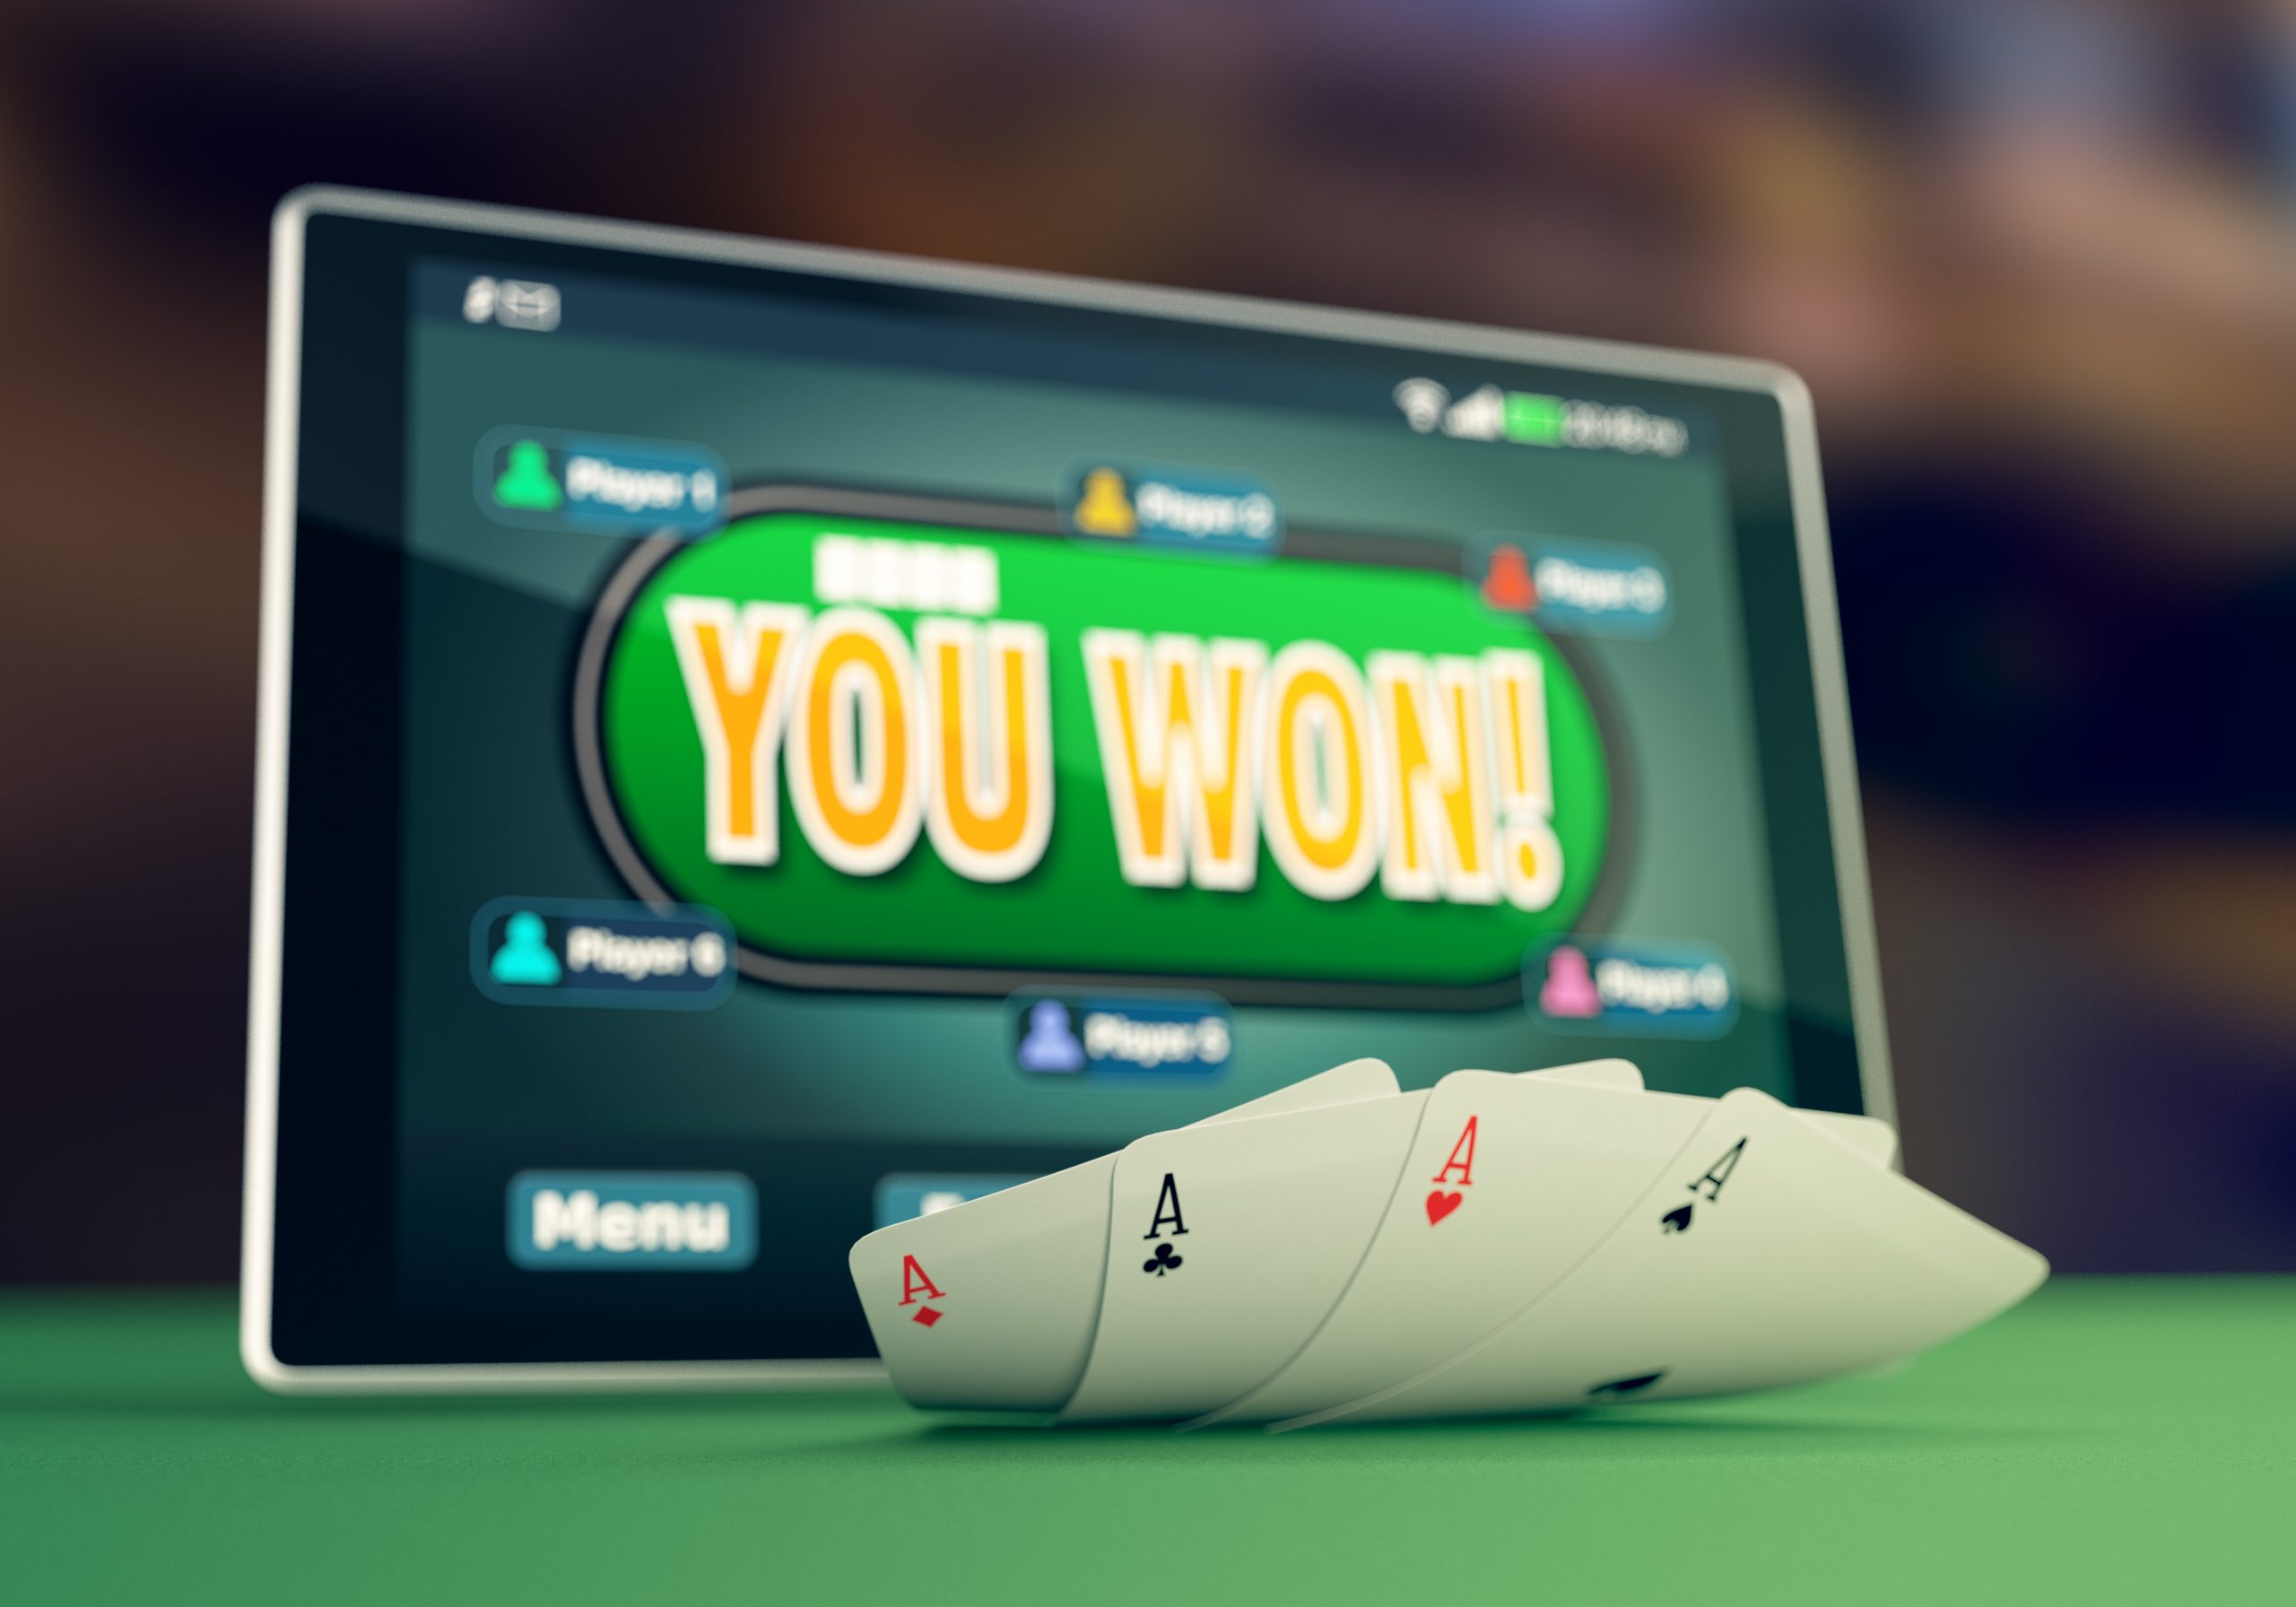 Bermain Game Poker Online Indonesia Terbaik Untuk Kalian Shutterstock_369764519-scaled